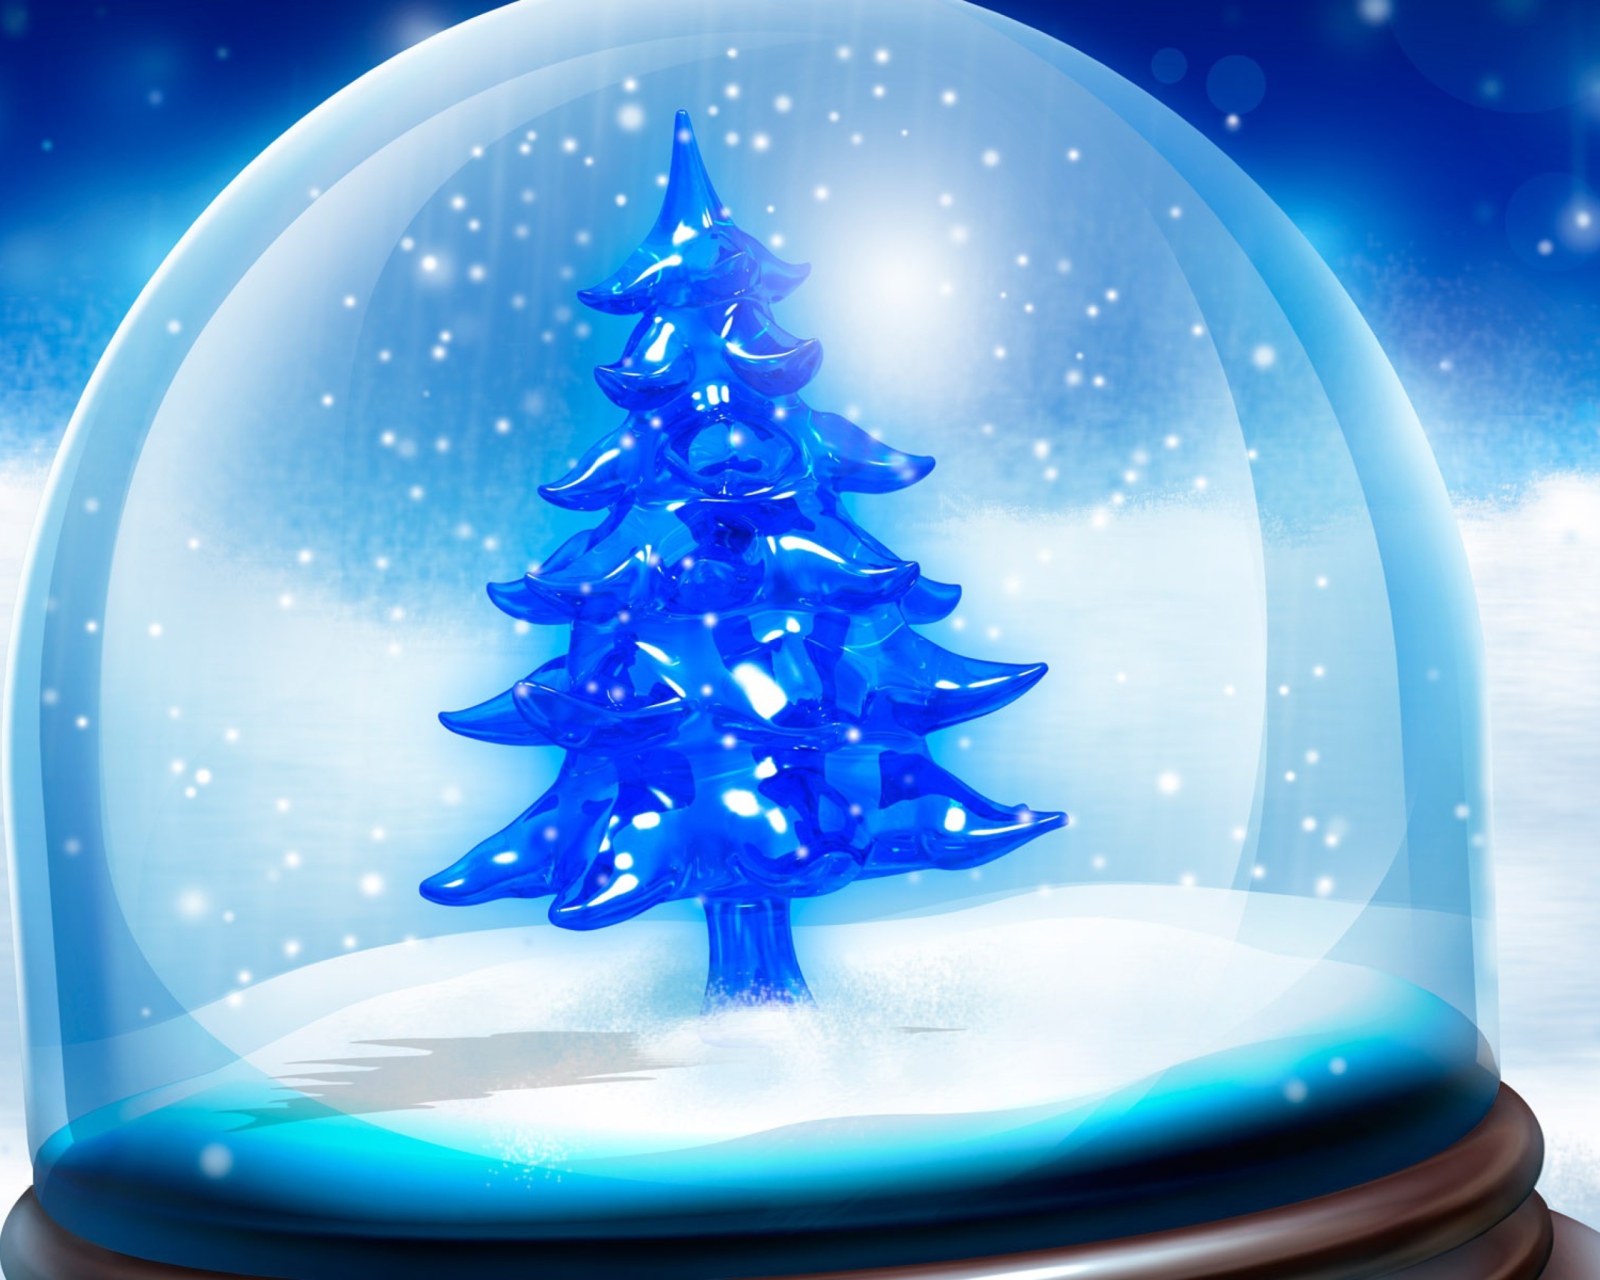 Das Snowy Christmas Tree Wallpaper 1600x1280